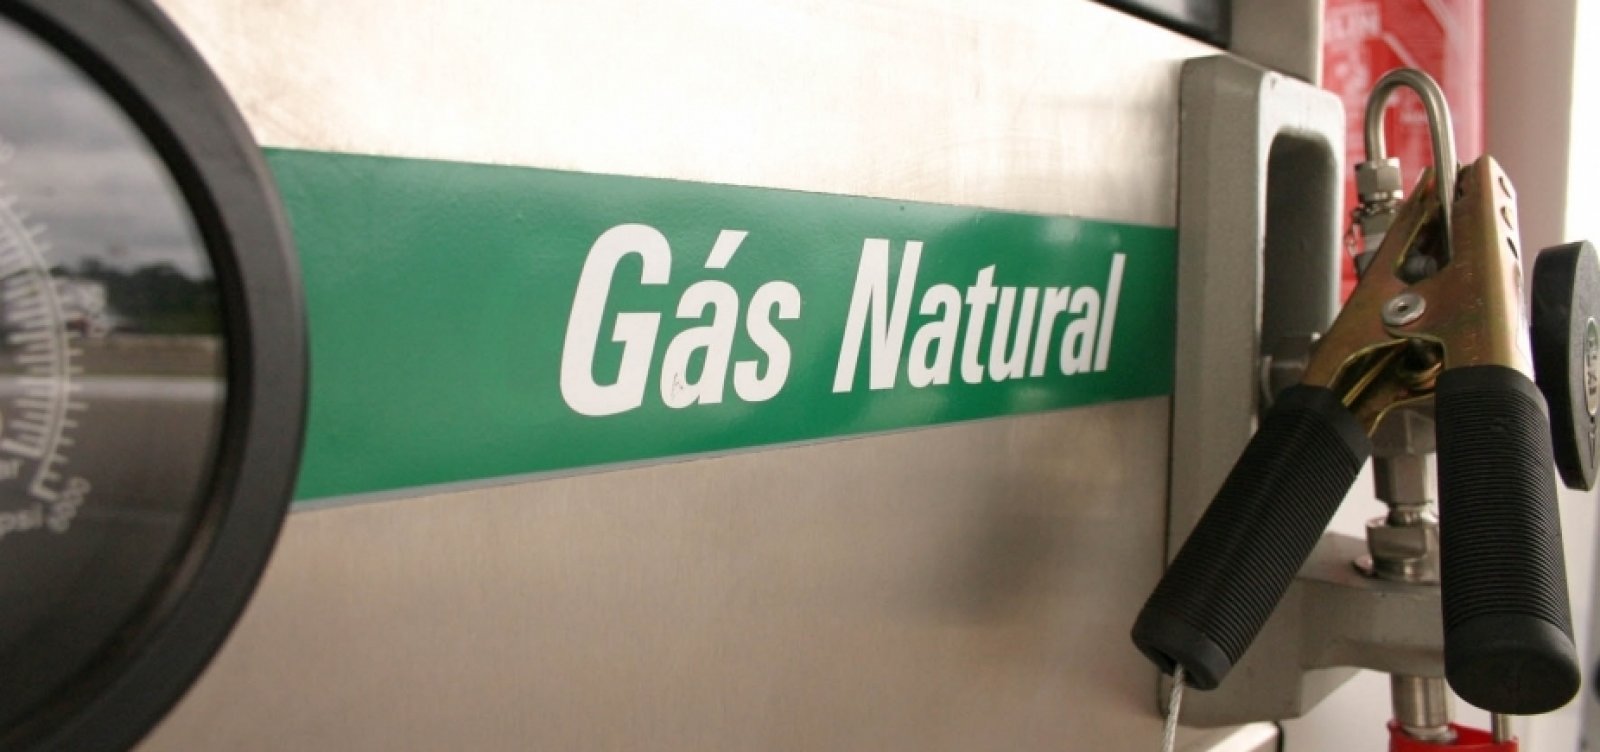 Bahiagás anuncia redução de tarifas do gás natural em mais de 20%